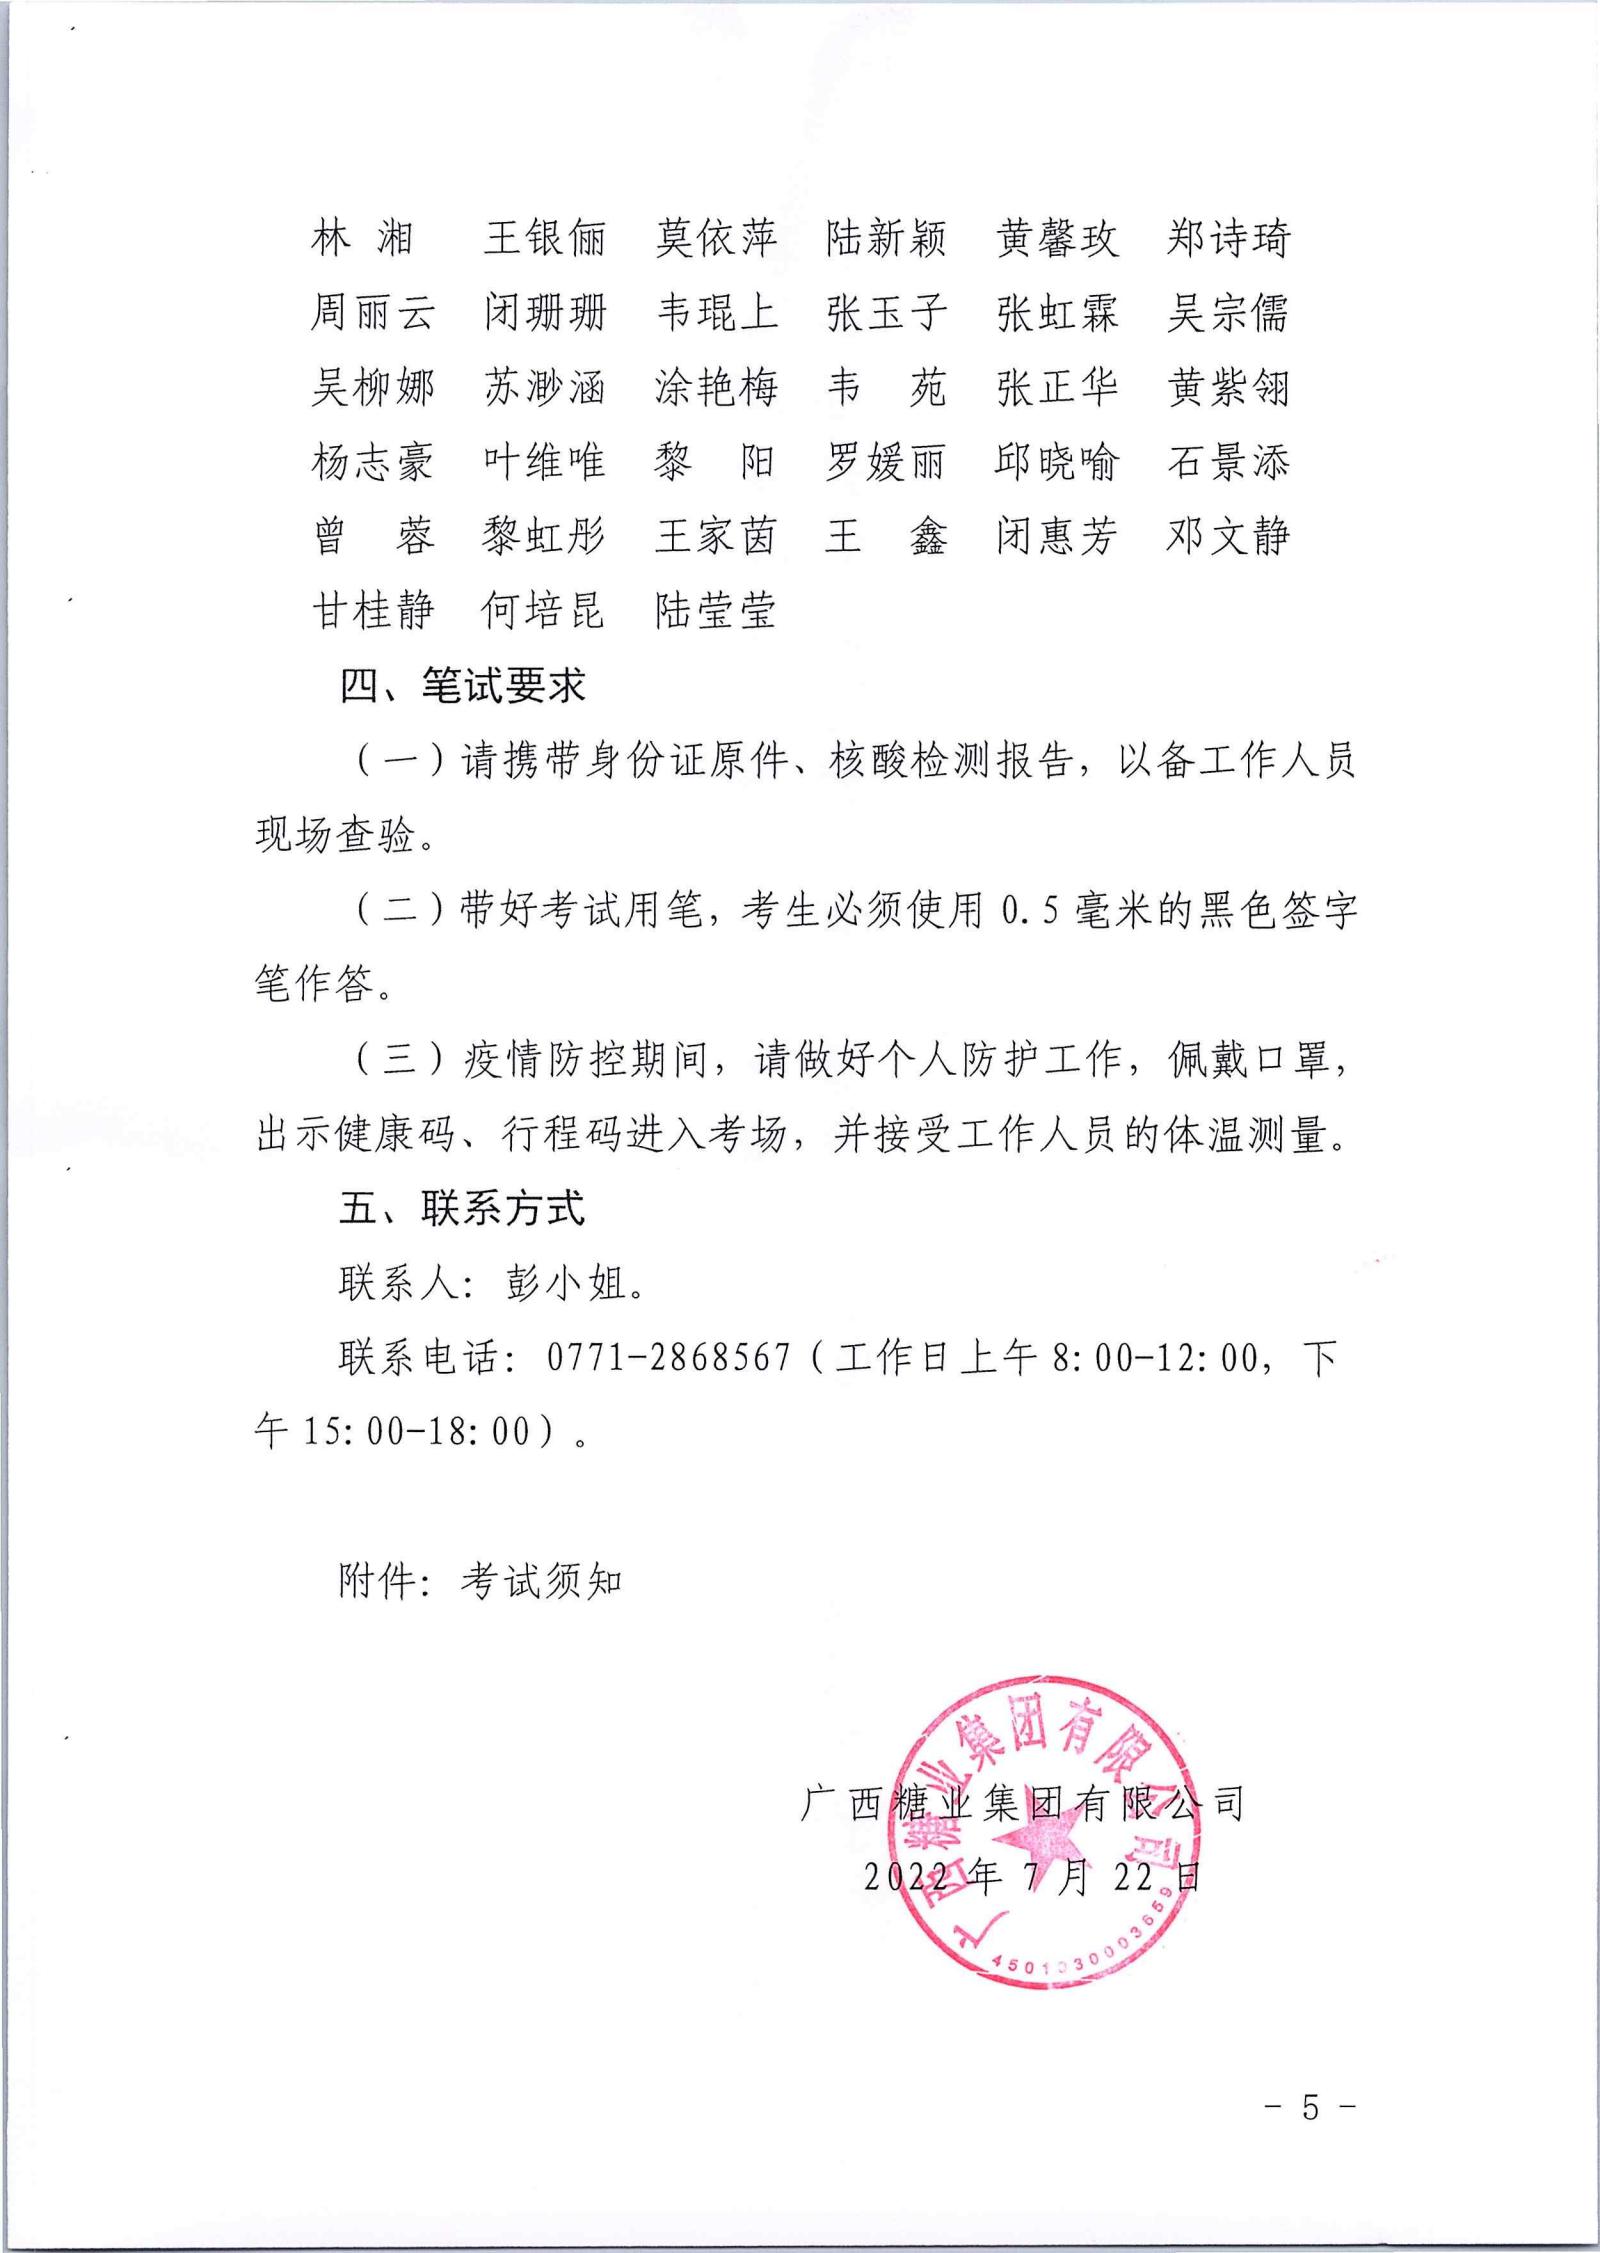 江南平台(中国)有限公司有限公司2022年第一批社会公开招聘笔试公告_04.jpg